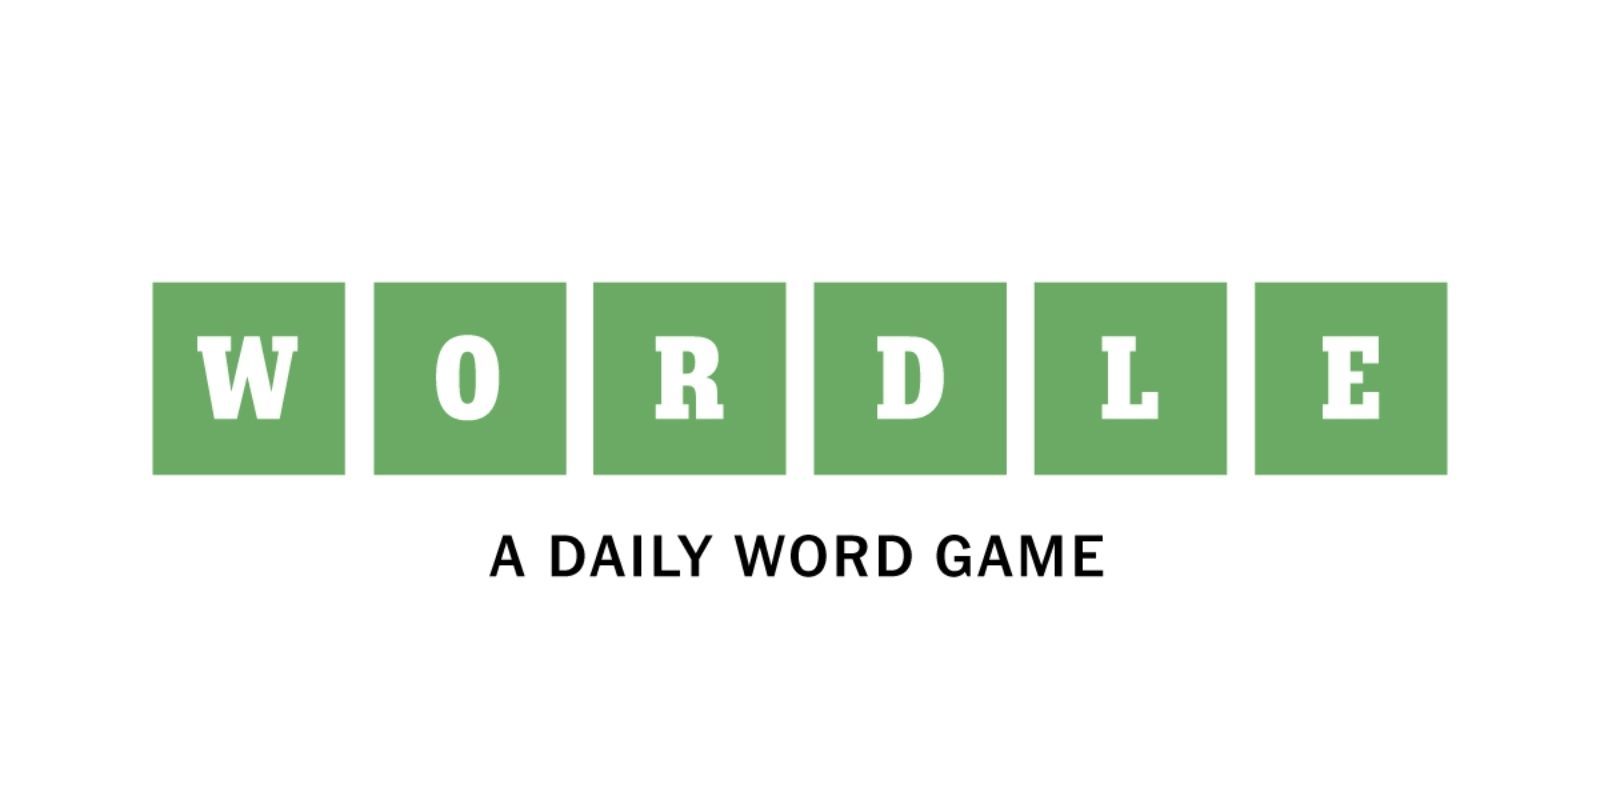 La psicología de Wordle: por qué saber que es "difícil" lo hace más fácil